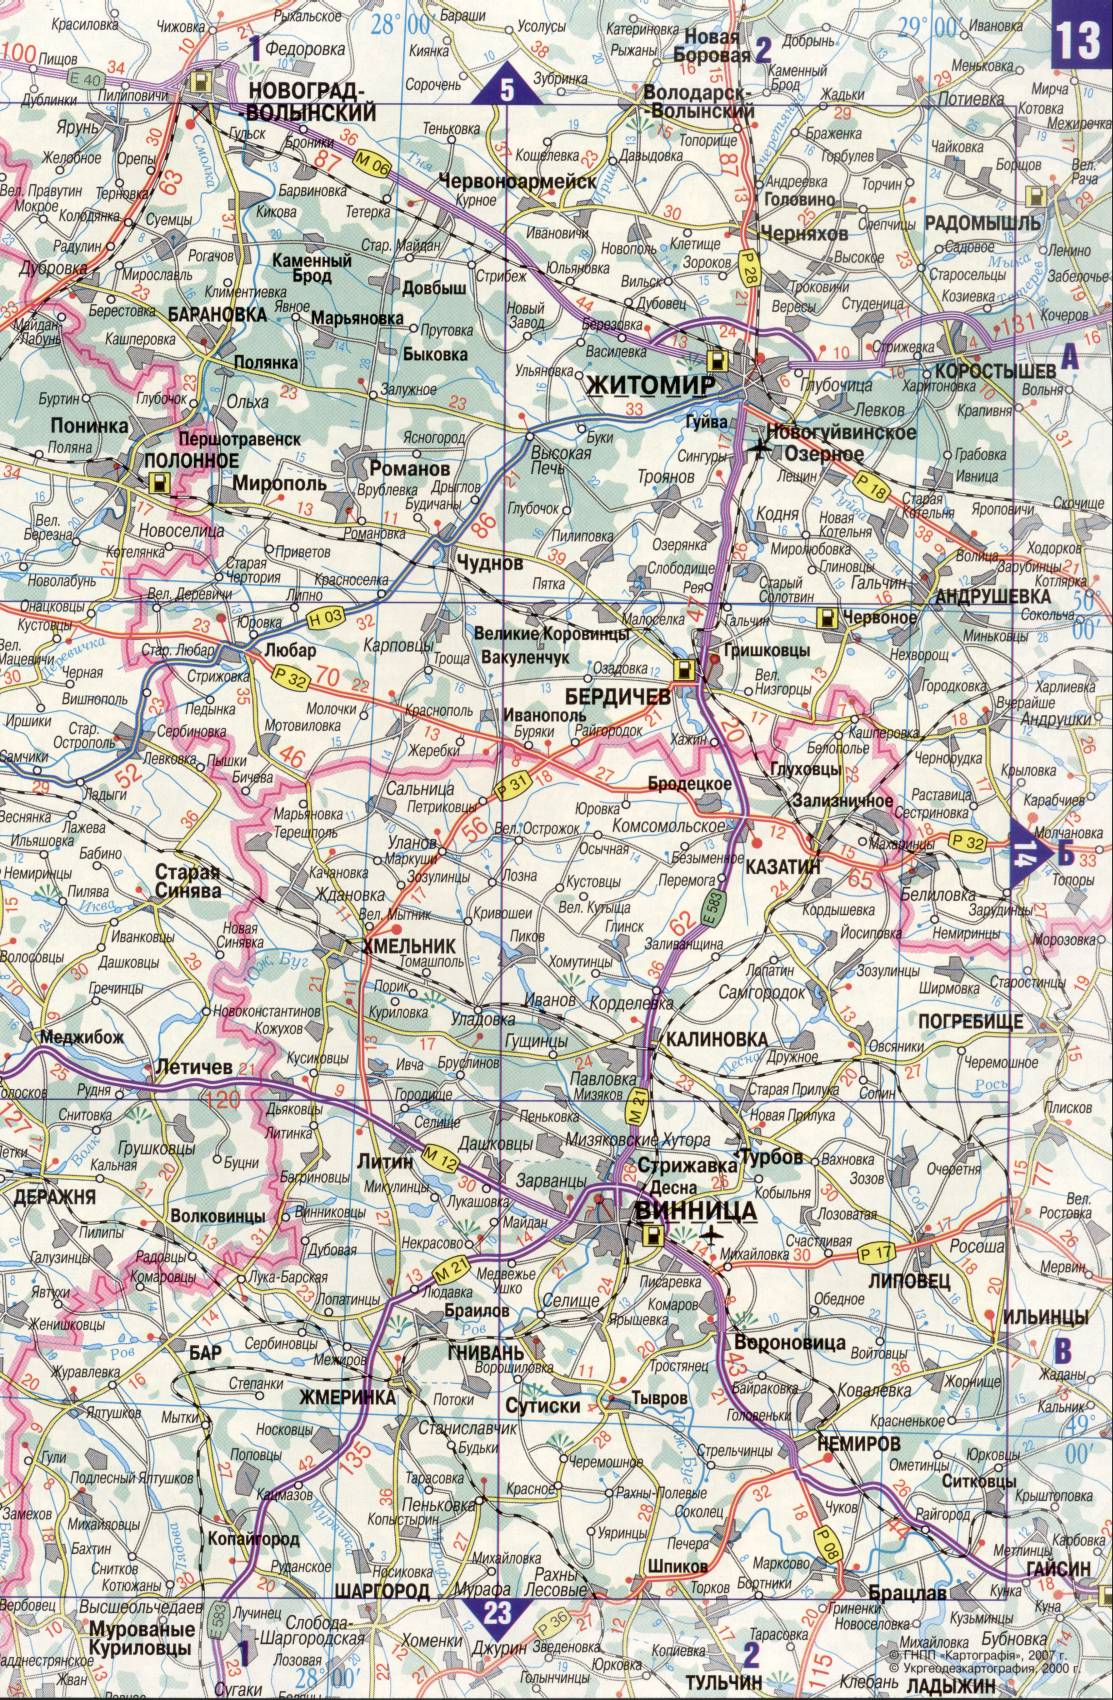 Карта Украины. Подробная карта дорог Украина из автомобильног атласа. скачать бесплатно, D1